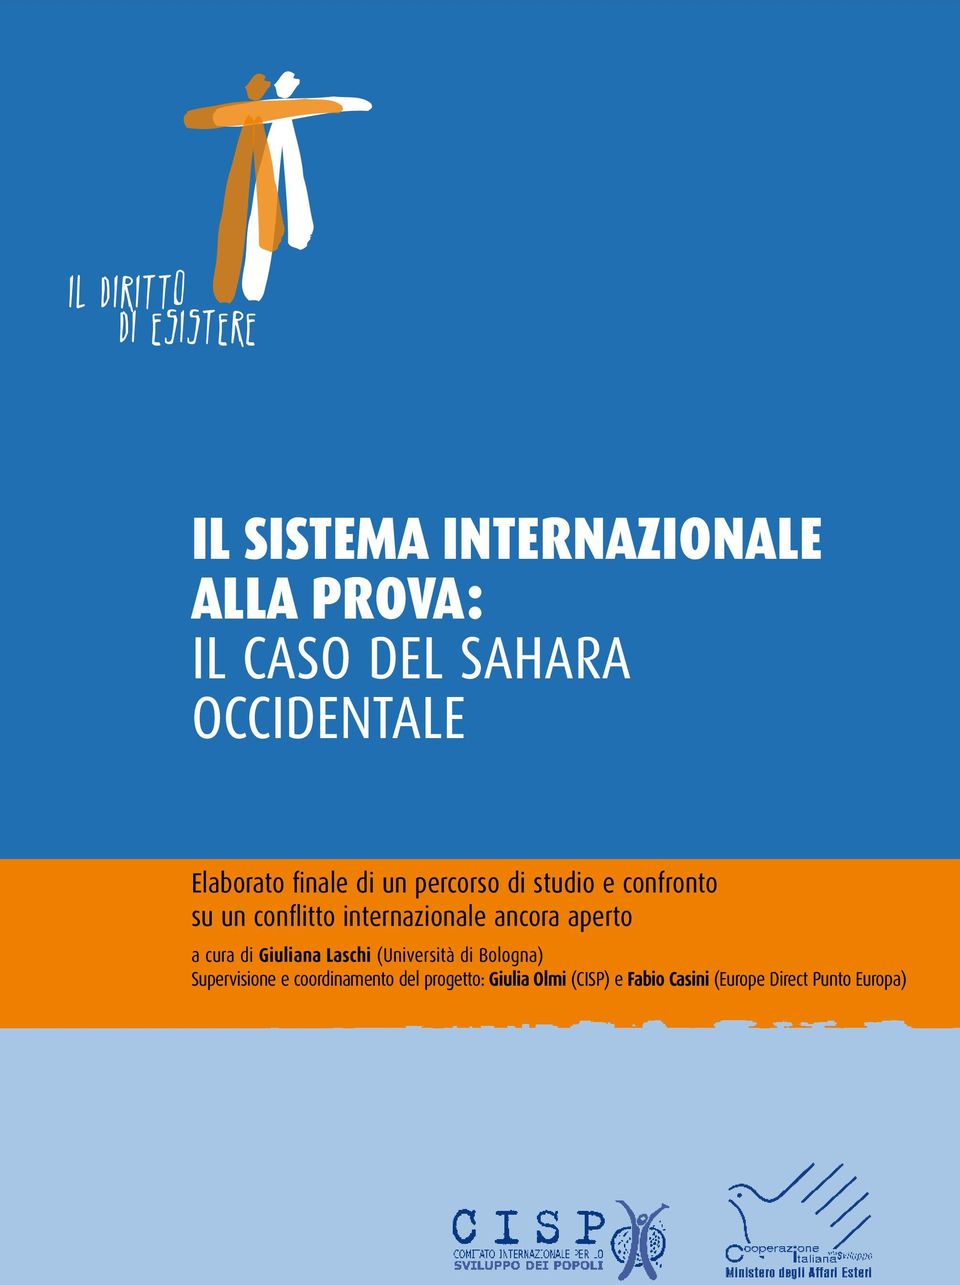 internazionale ancora aperto a cura di Giuliana Laschi (Università di Bologna)